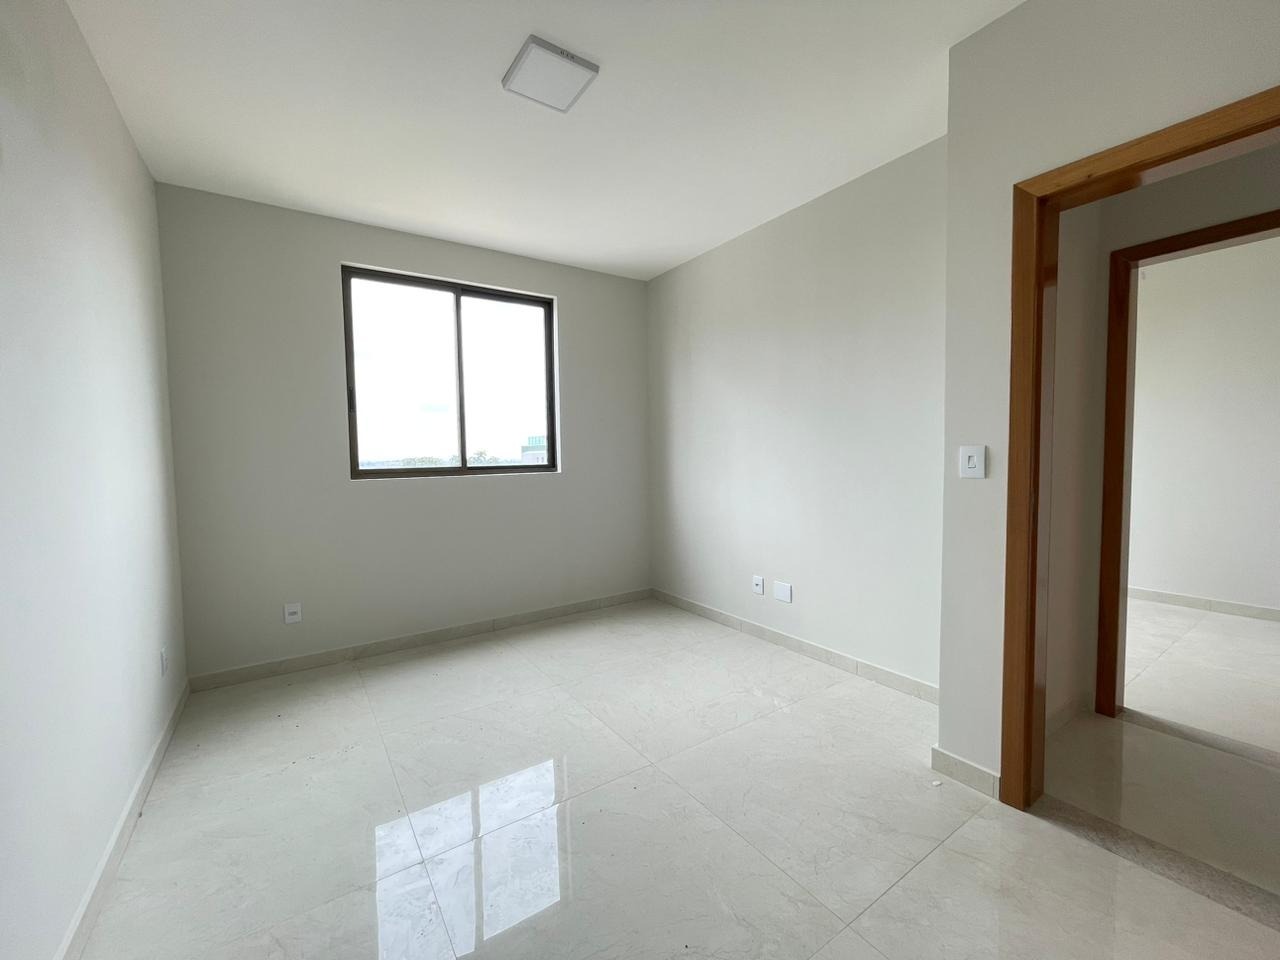 Área privativa à venda no Barreiro: Apartamento à venda, 03 Quartos com suíte - Barreiro/MG